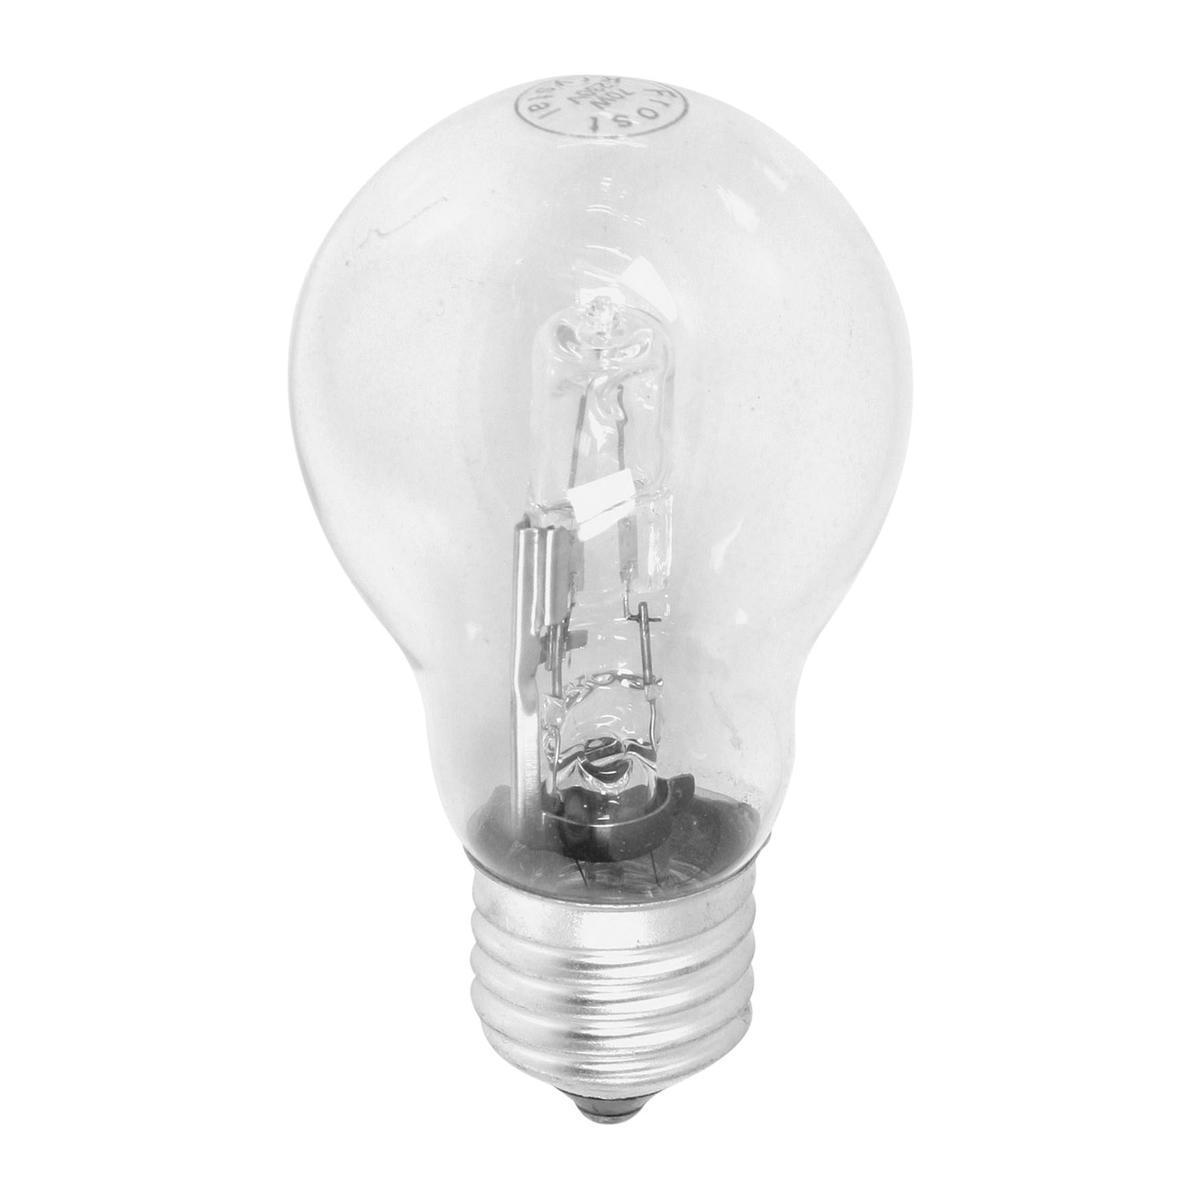 Ampoule halogène standard E27 - 12 x 5.5 x 14 cm - Transparent